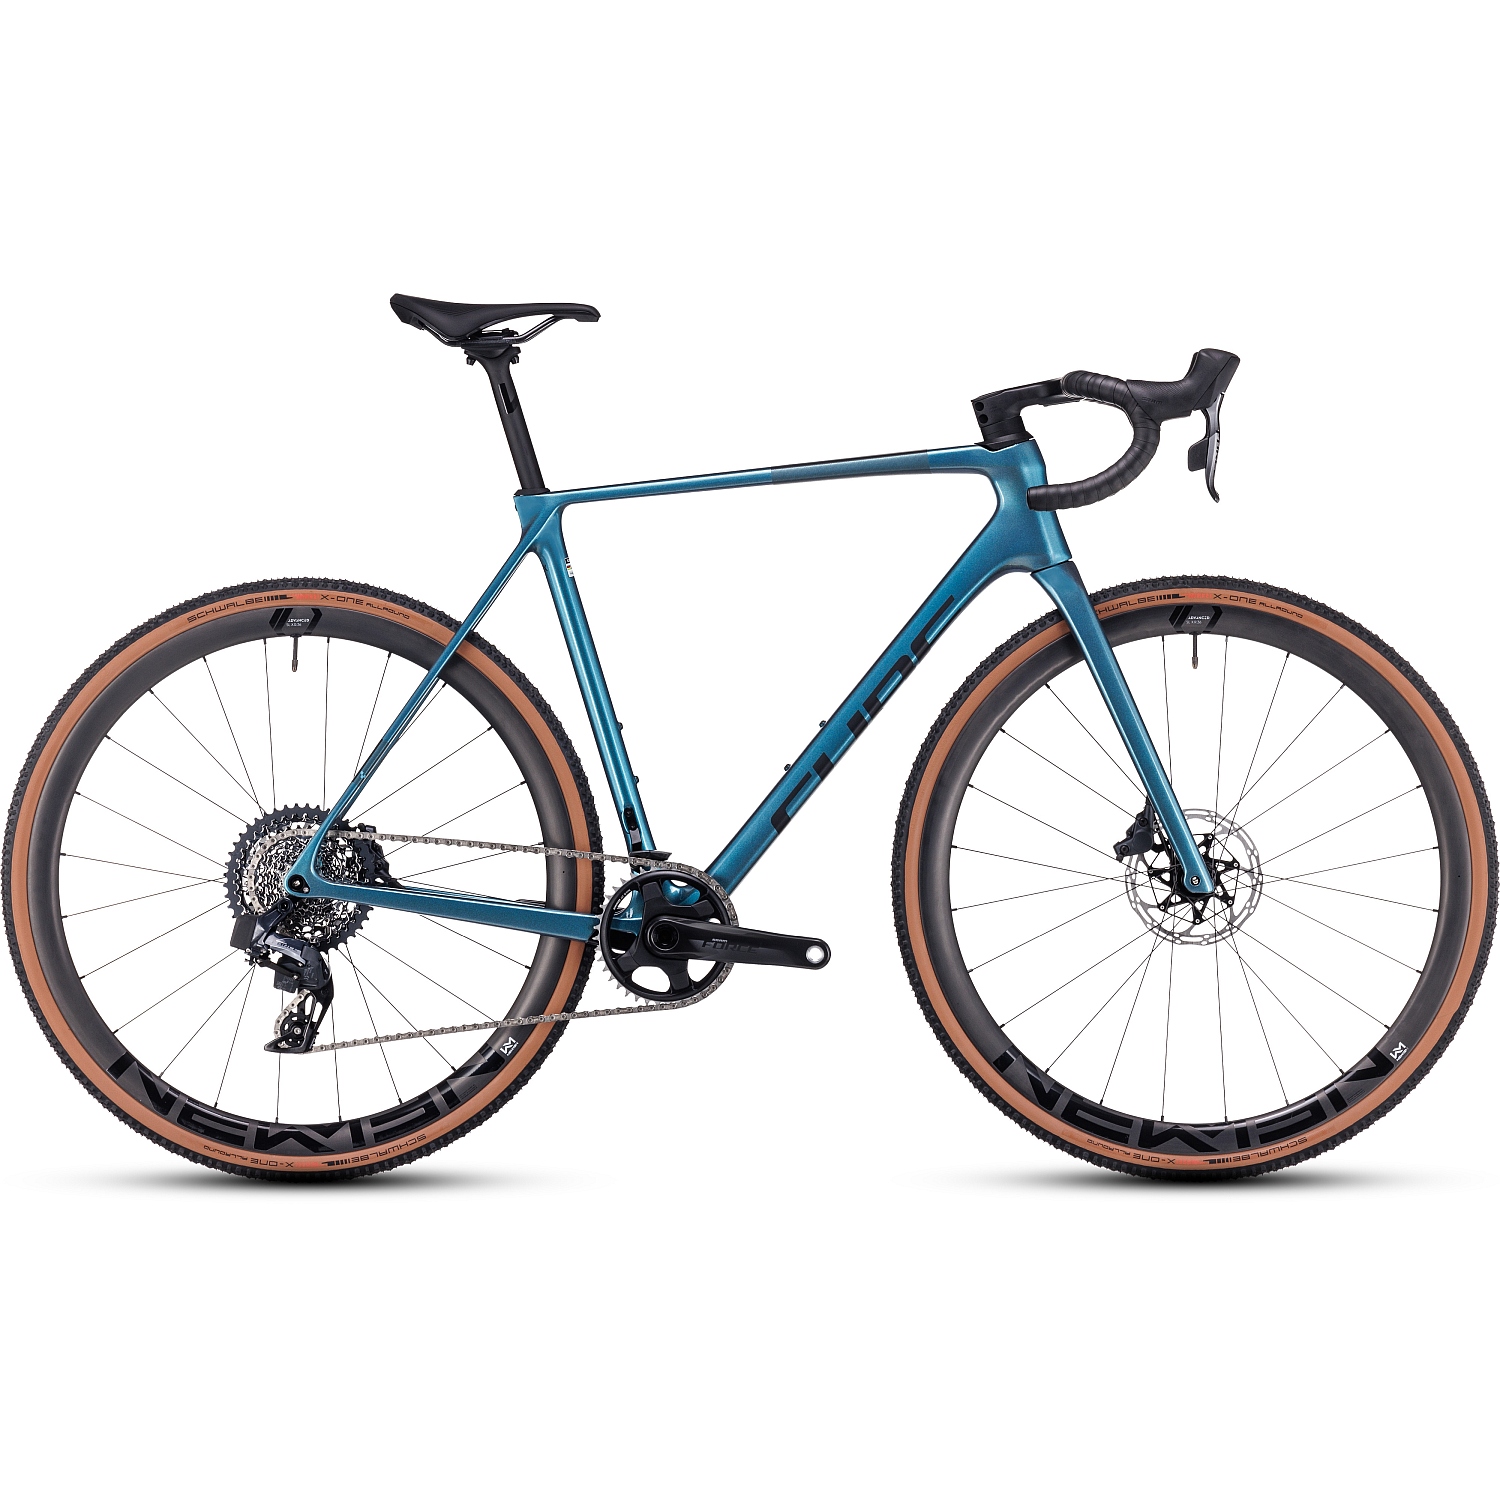 Produktbild von CUBE CROSS RACE C:68X SLT - Carbon Cyclocross Bike - 2023 - prizmblue / carbon